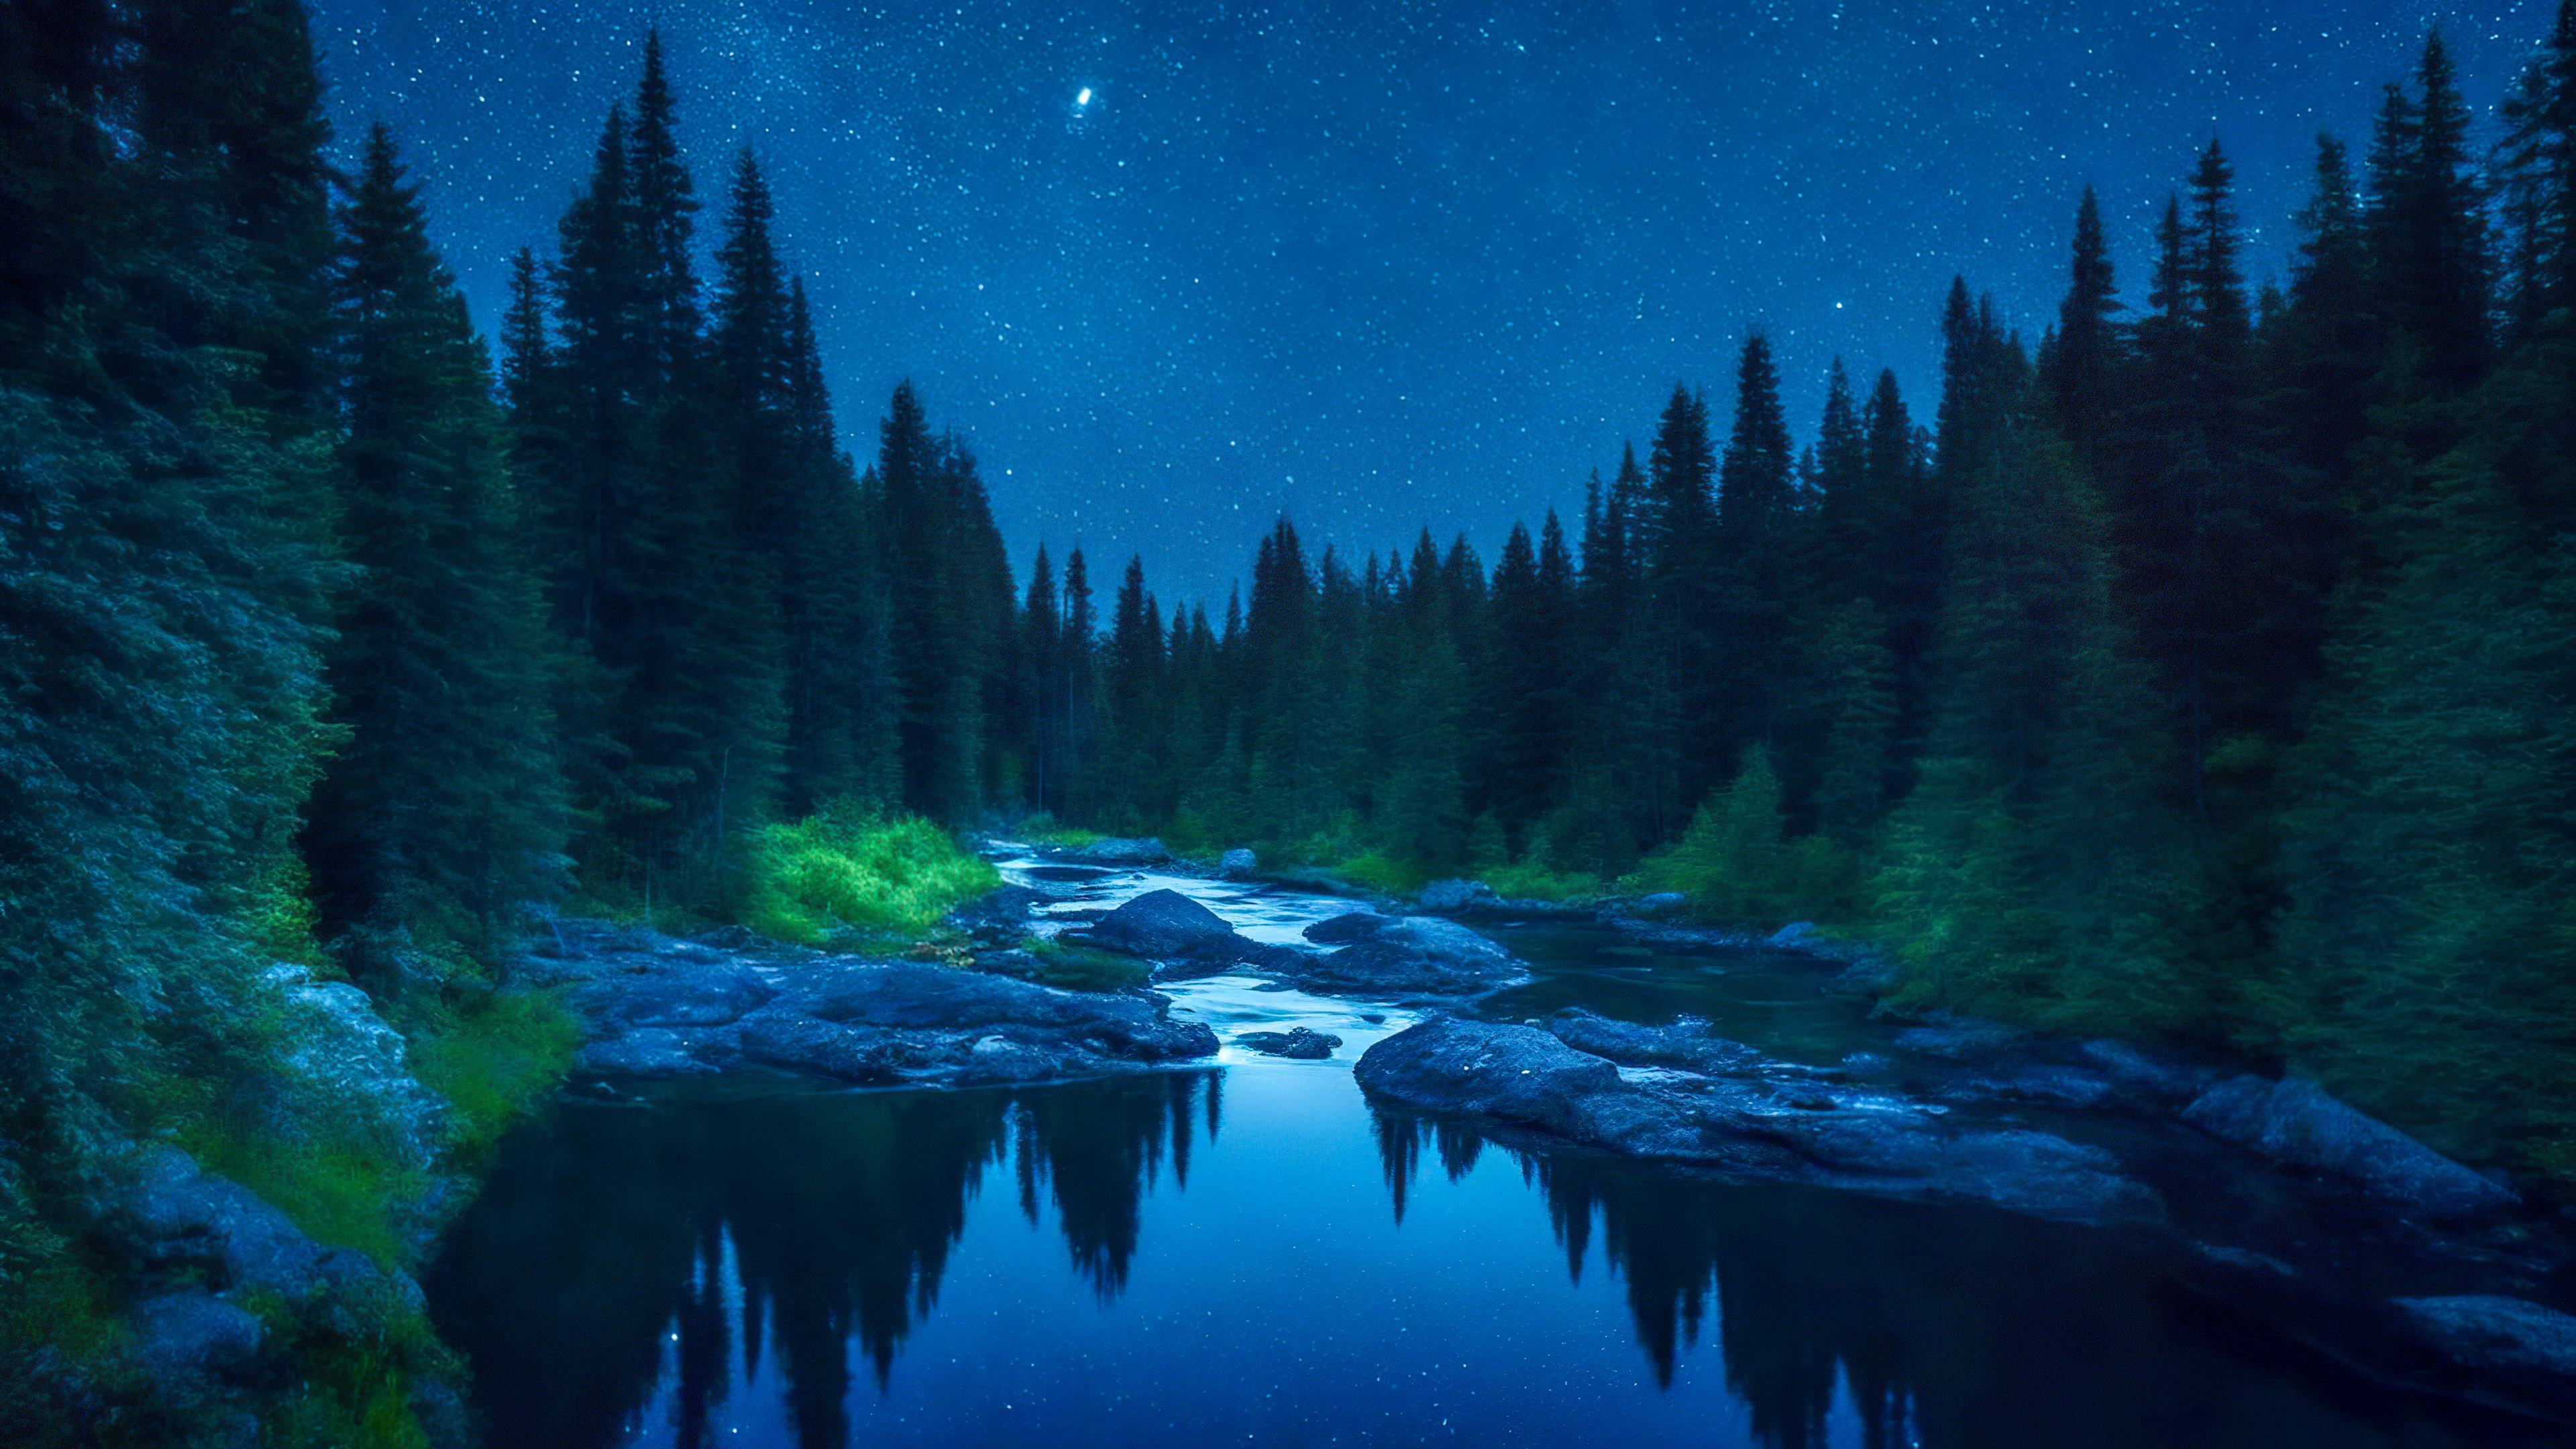 Laissez-vous hypnotiser par notre fond d'écran de paysage forestier, présentant une rivière paisible serpentant à travers une forêt dense, reflétant le ciel nocturne scintillant.